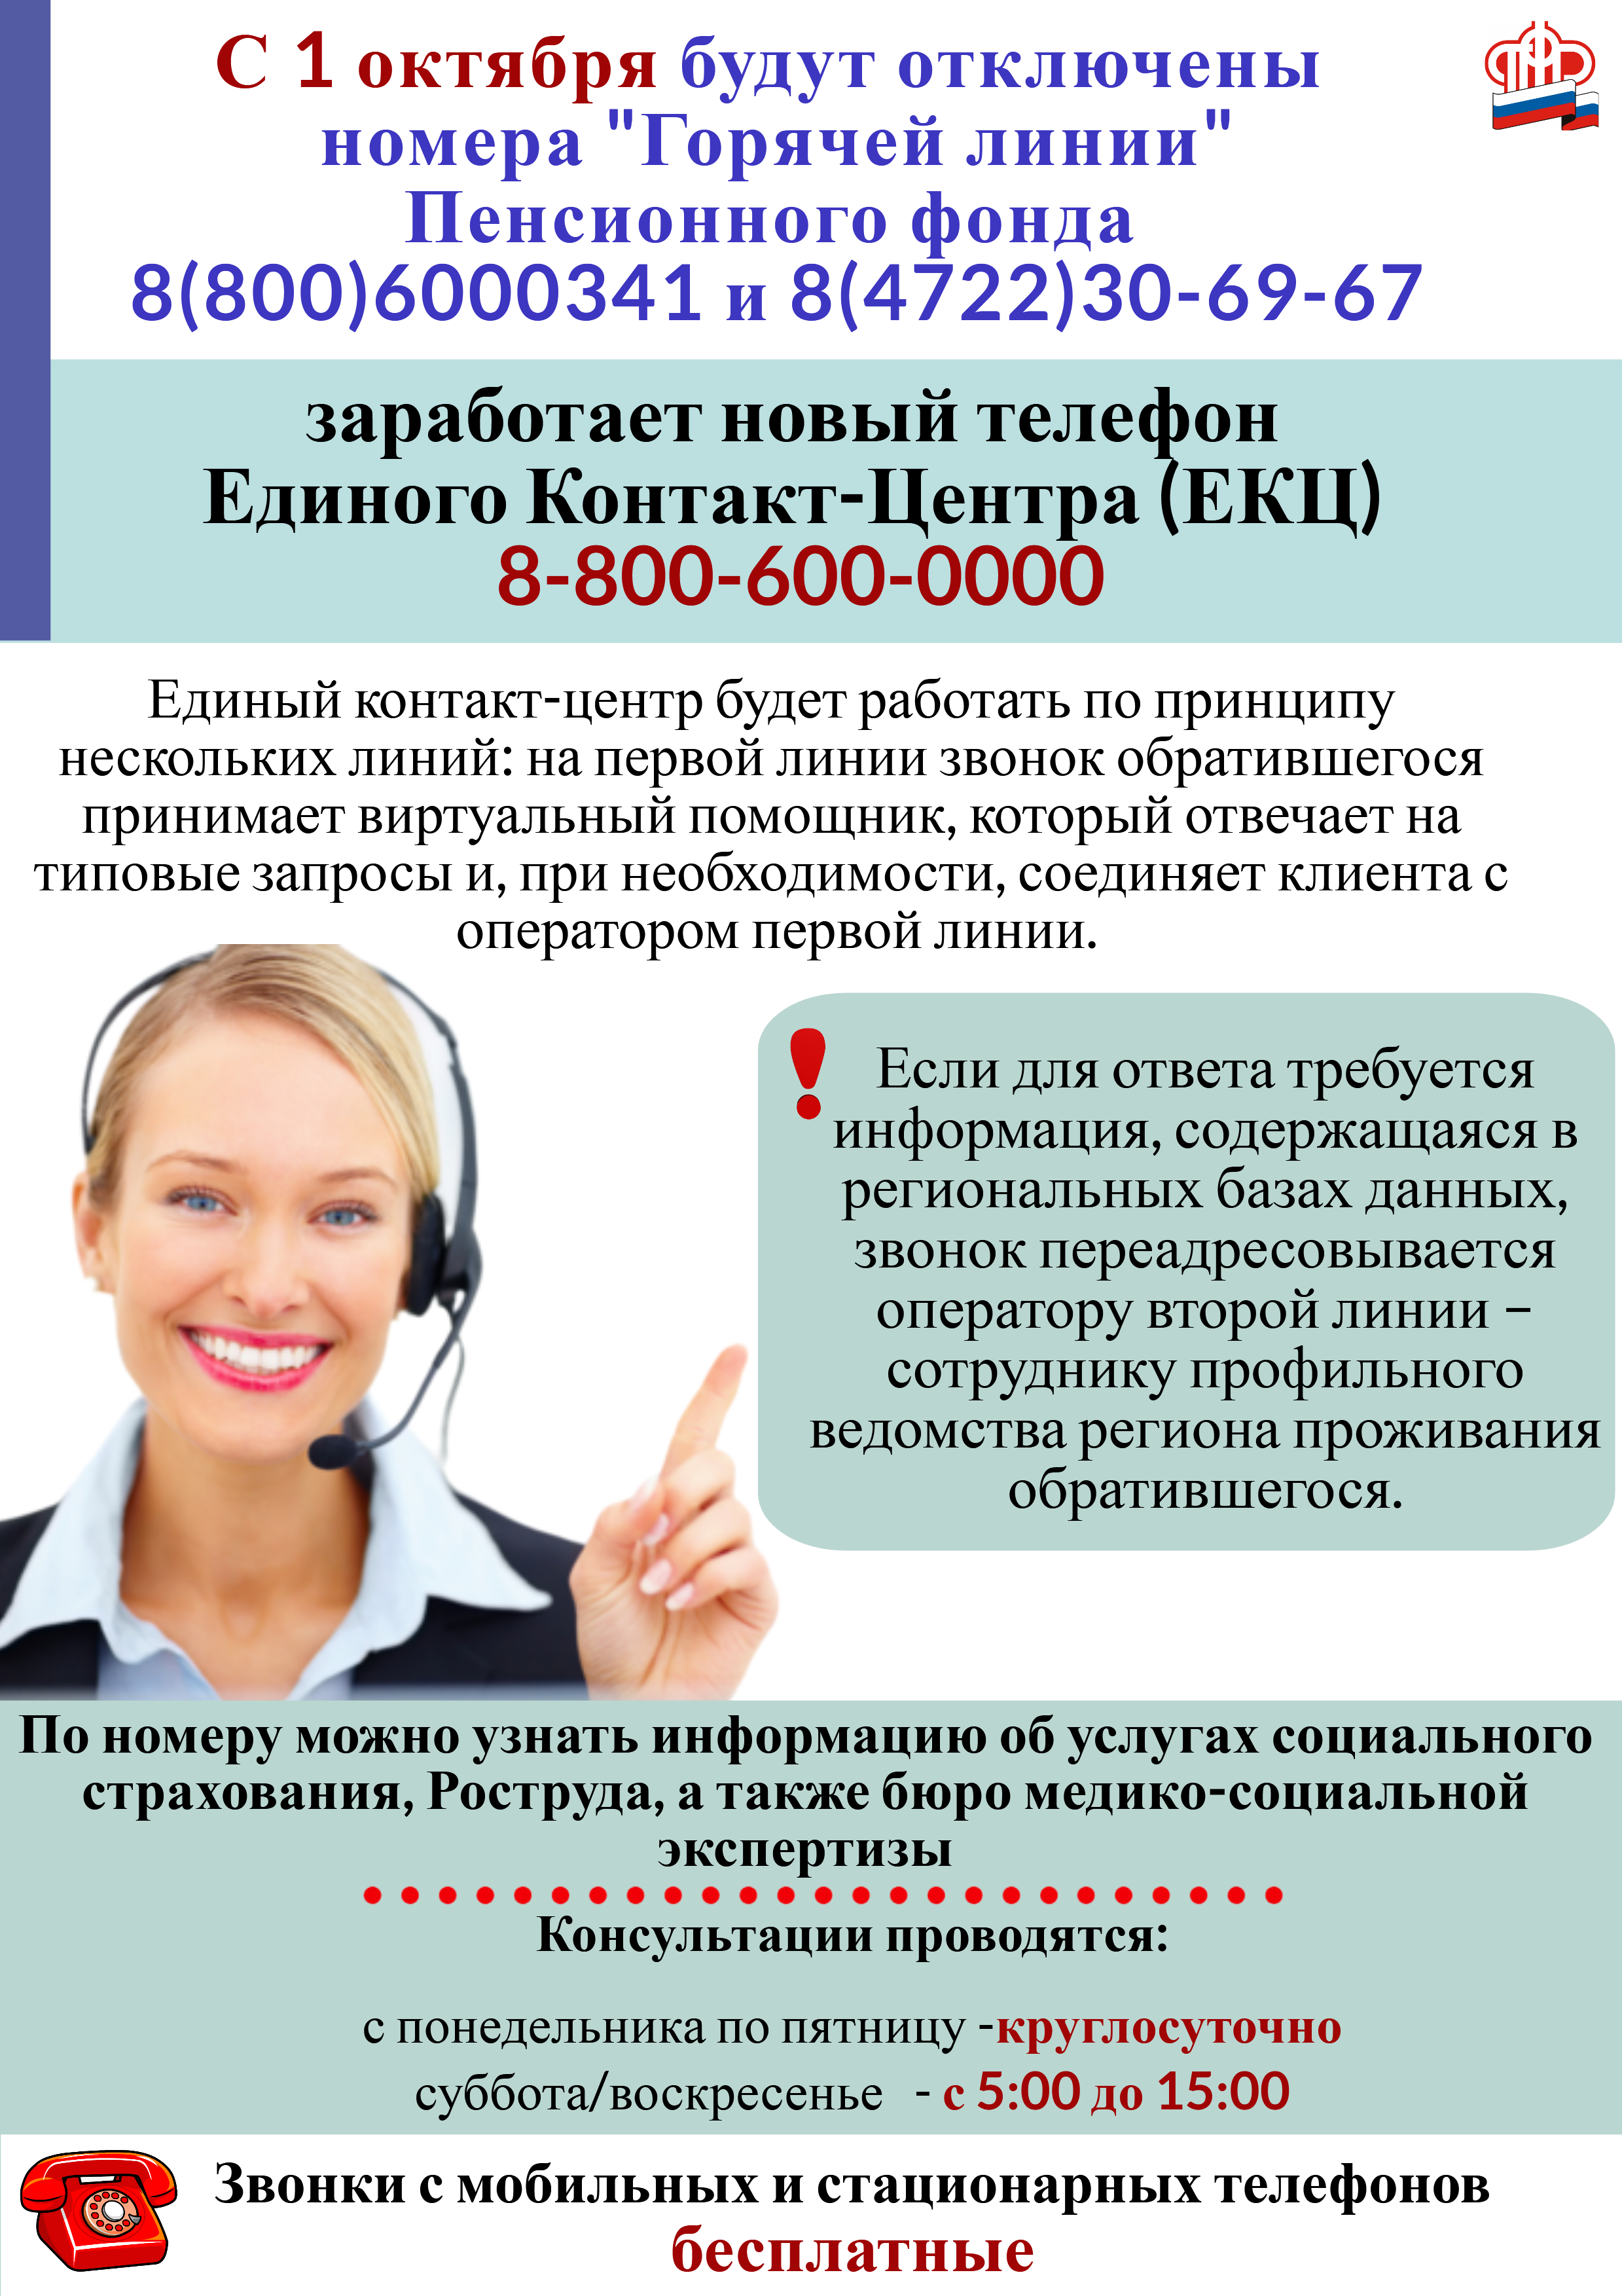 С 1 октября заработает новый телефон Единого Контакт — Центра (ЕКЦ) Министерства труда и социальной защиты РФ.